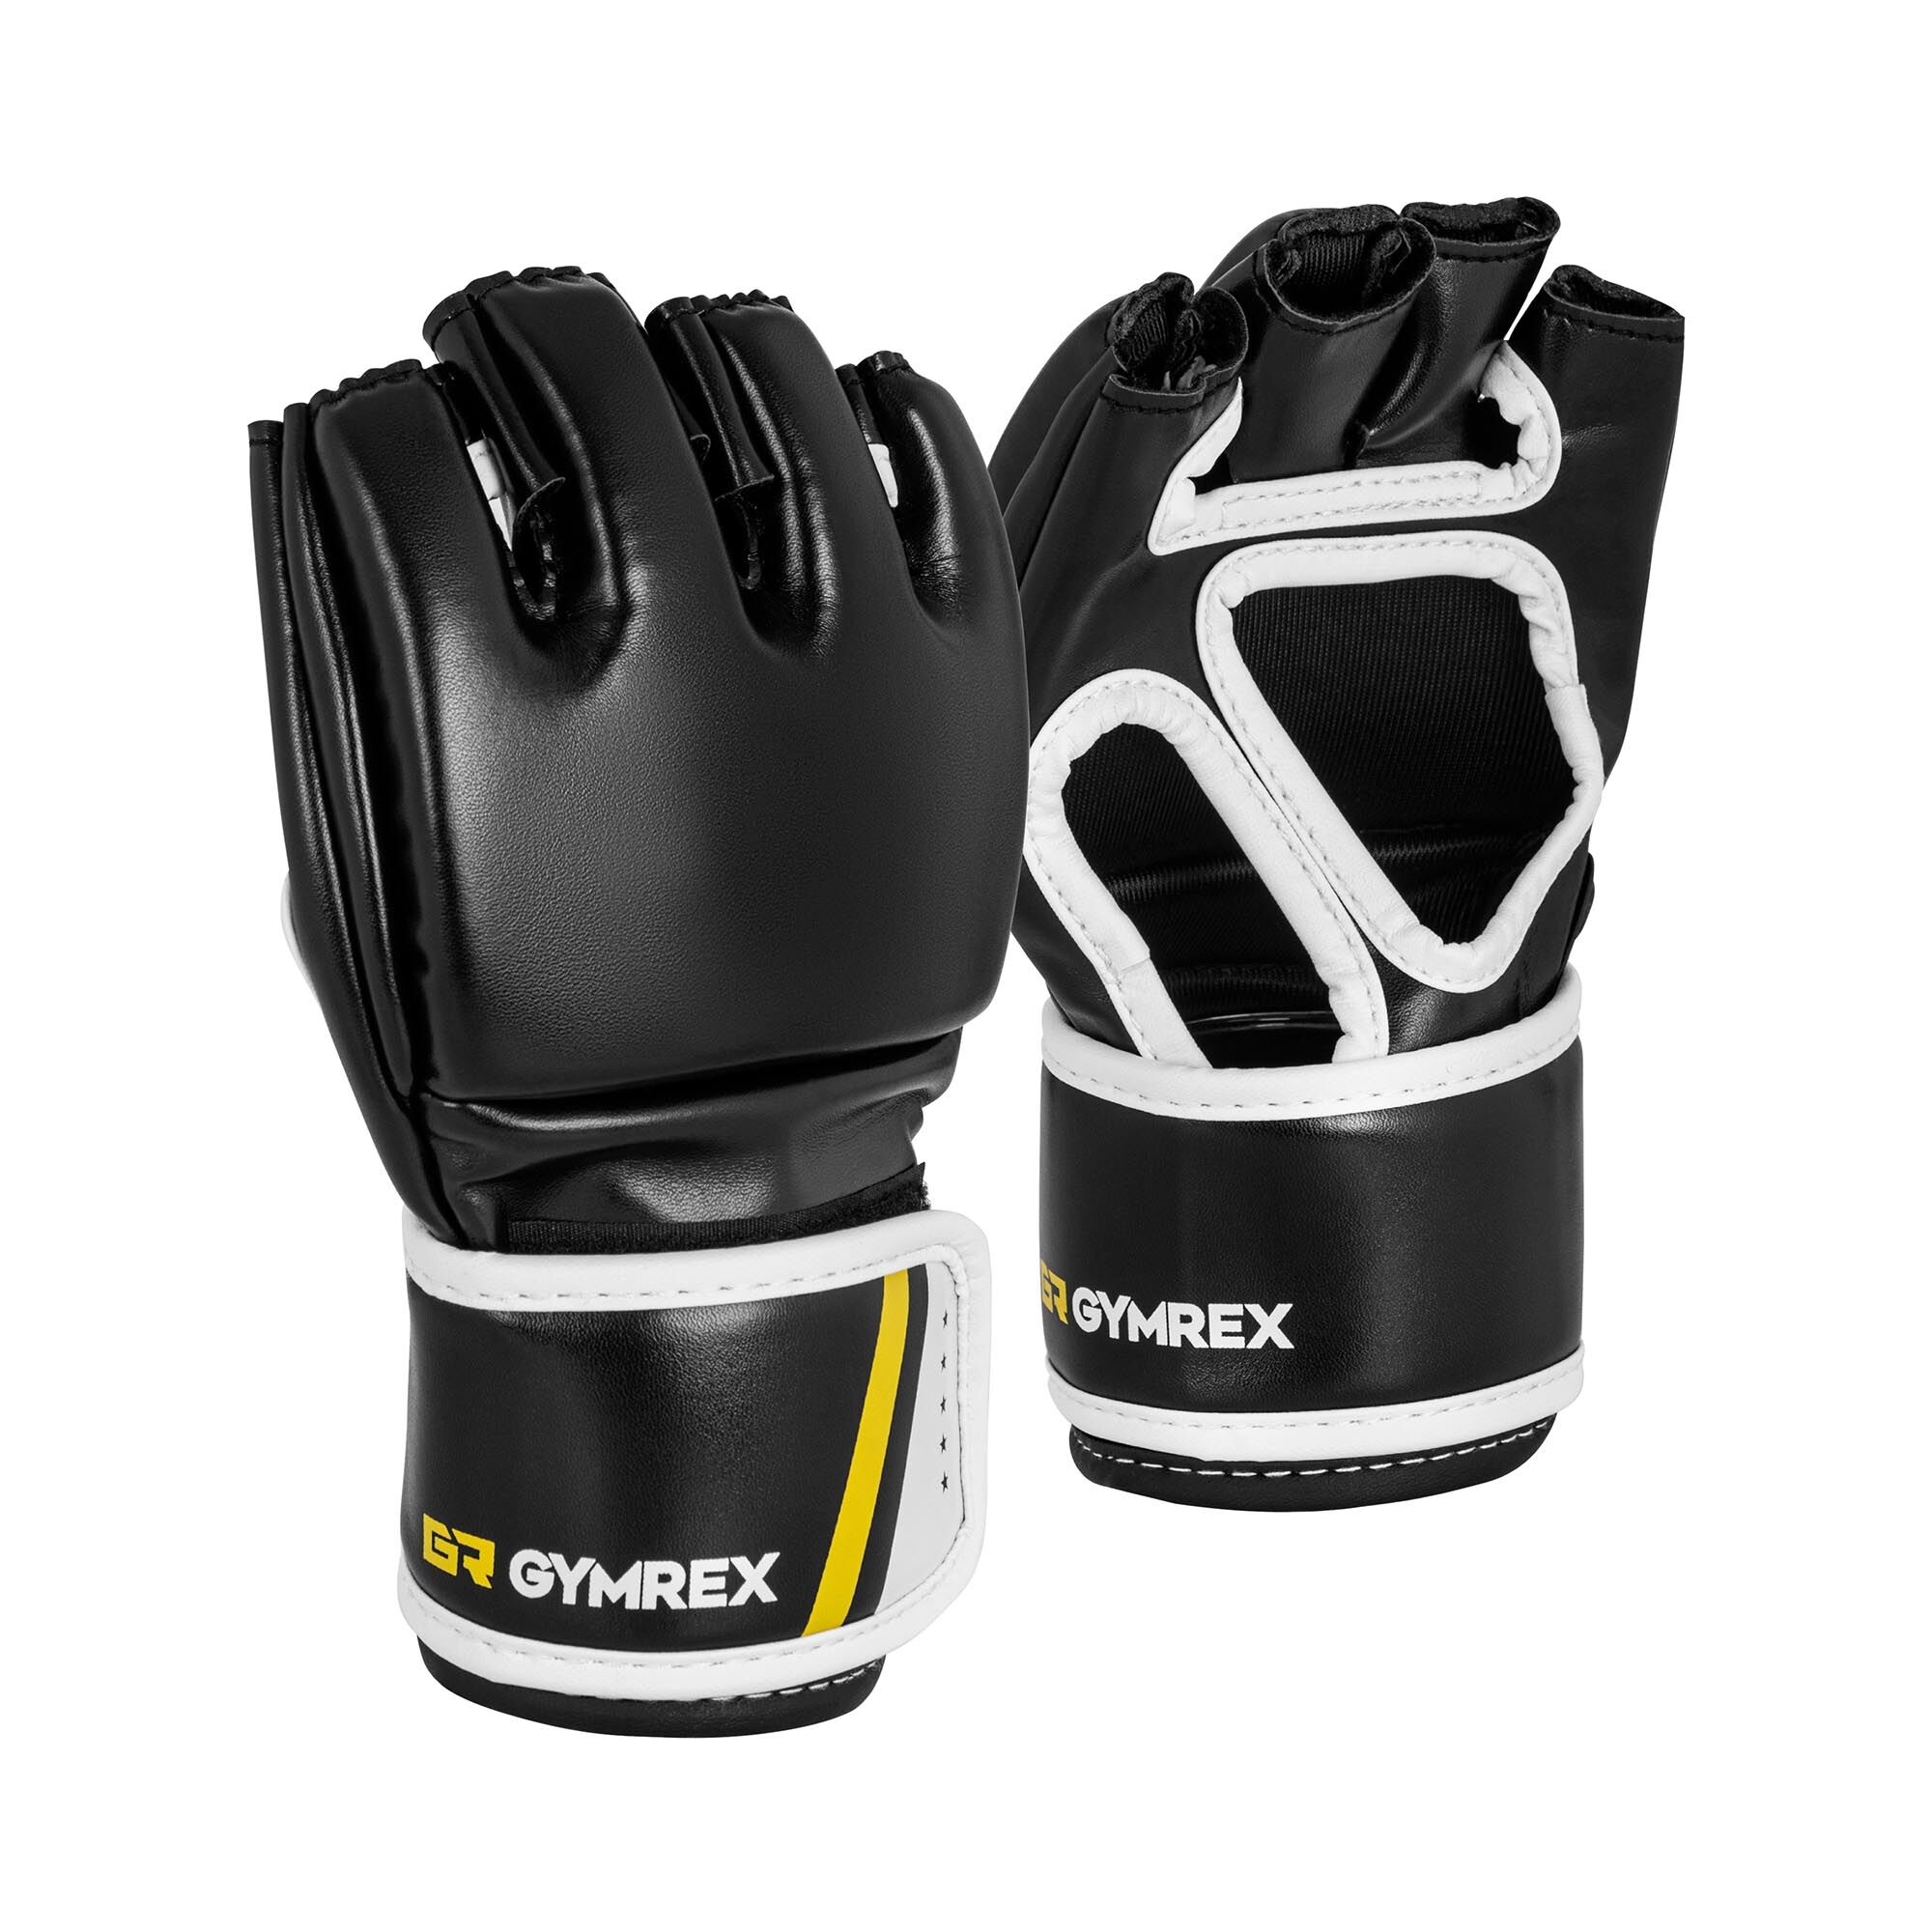 Gymrex MMA Handschuhe - Gr. S/M - schwarz - ohne Daumen